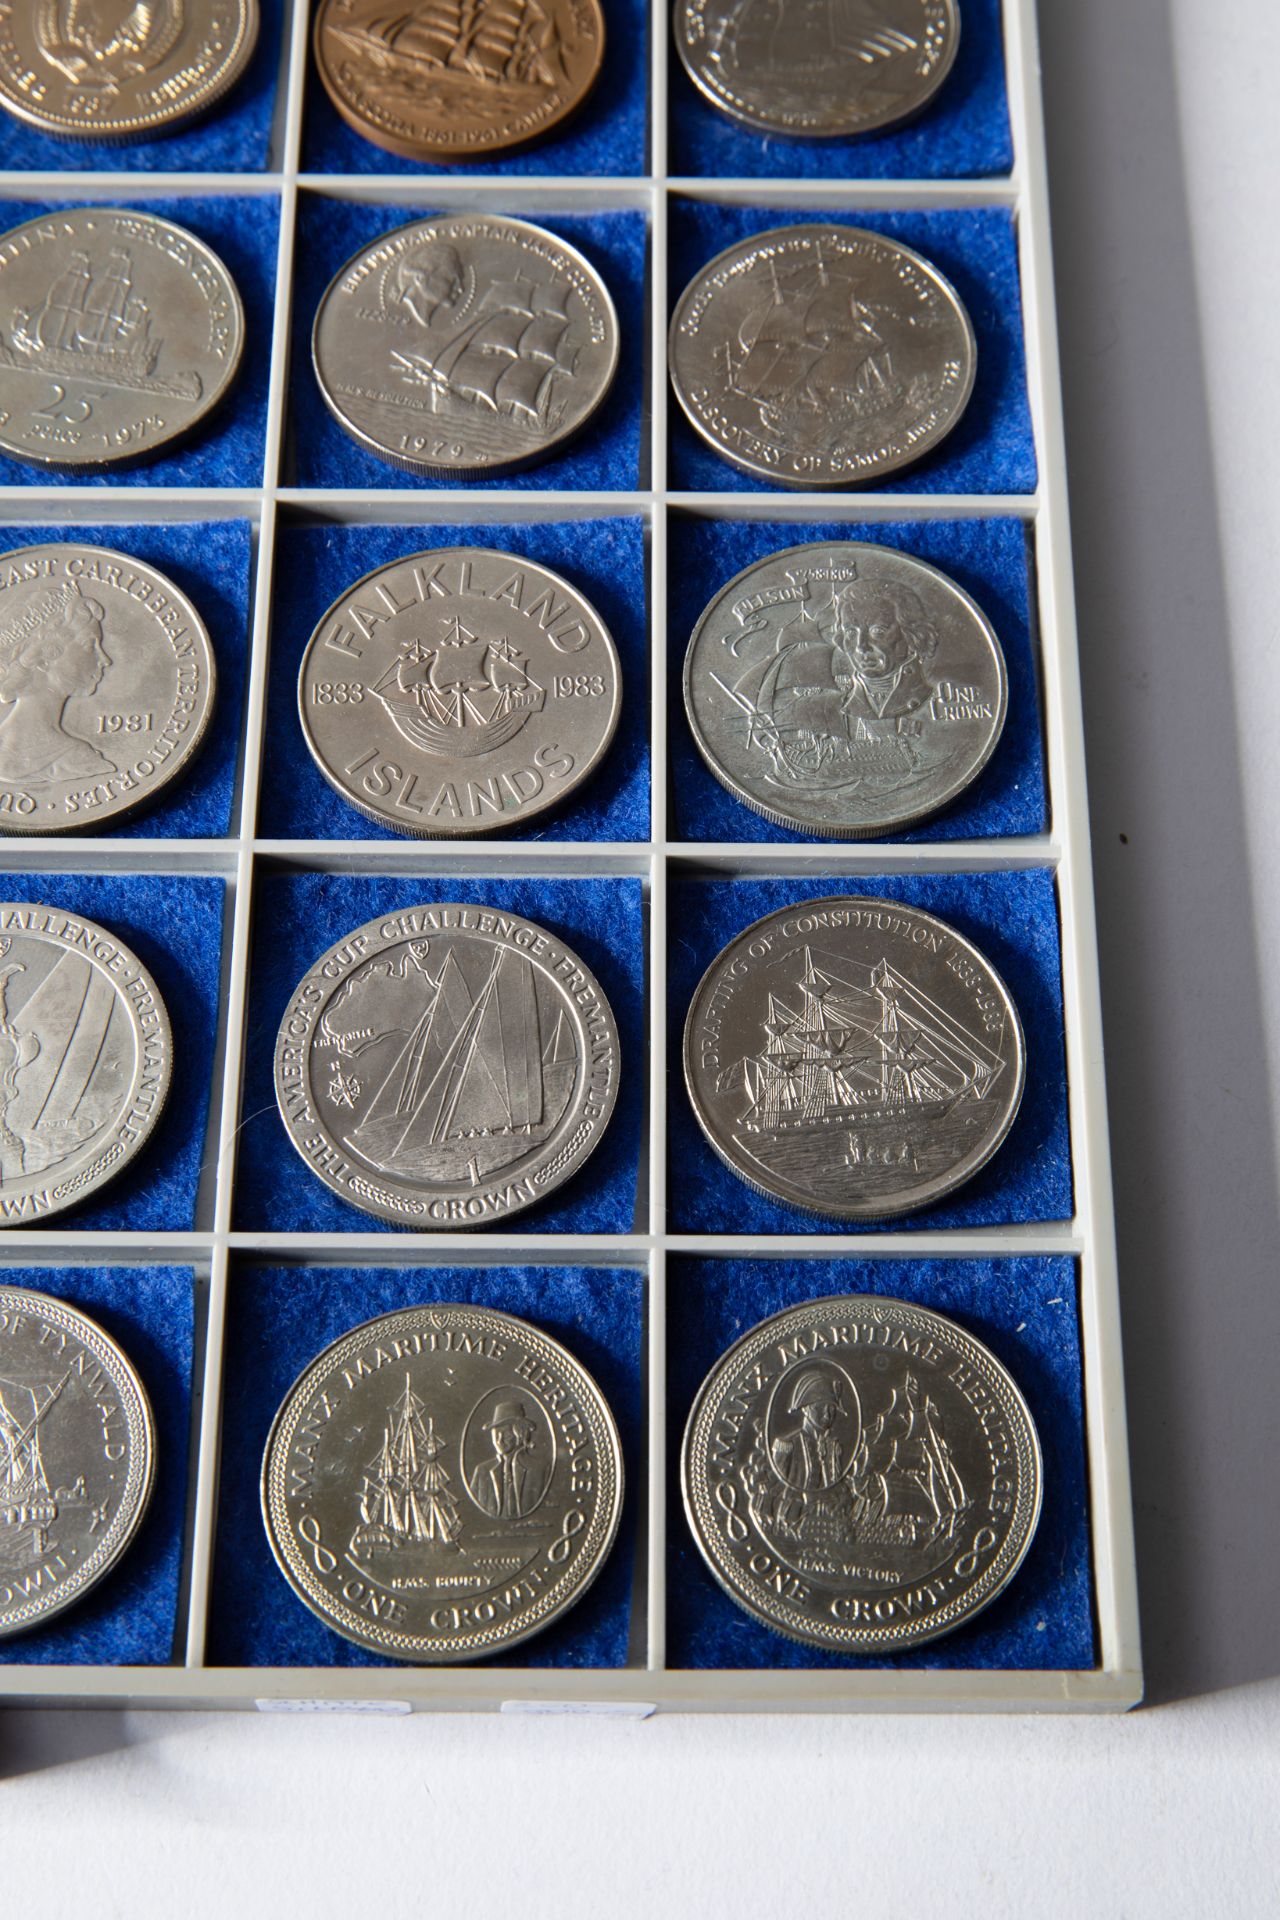 26 silver coins & 8 medals, ships 1969-1988 worldwide - Bild 4 aus 13